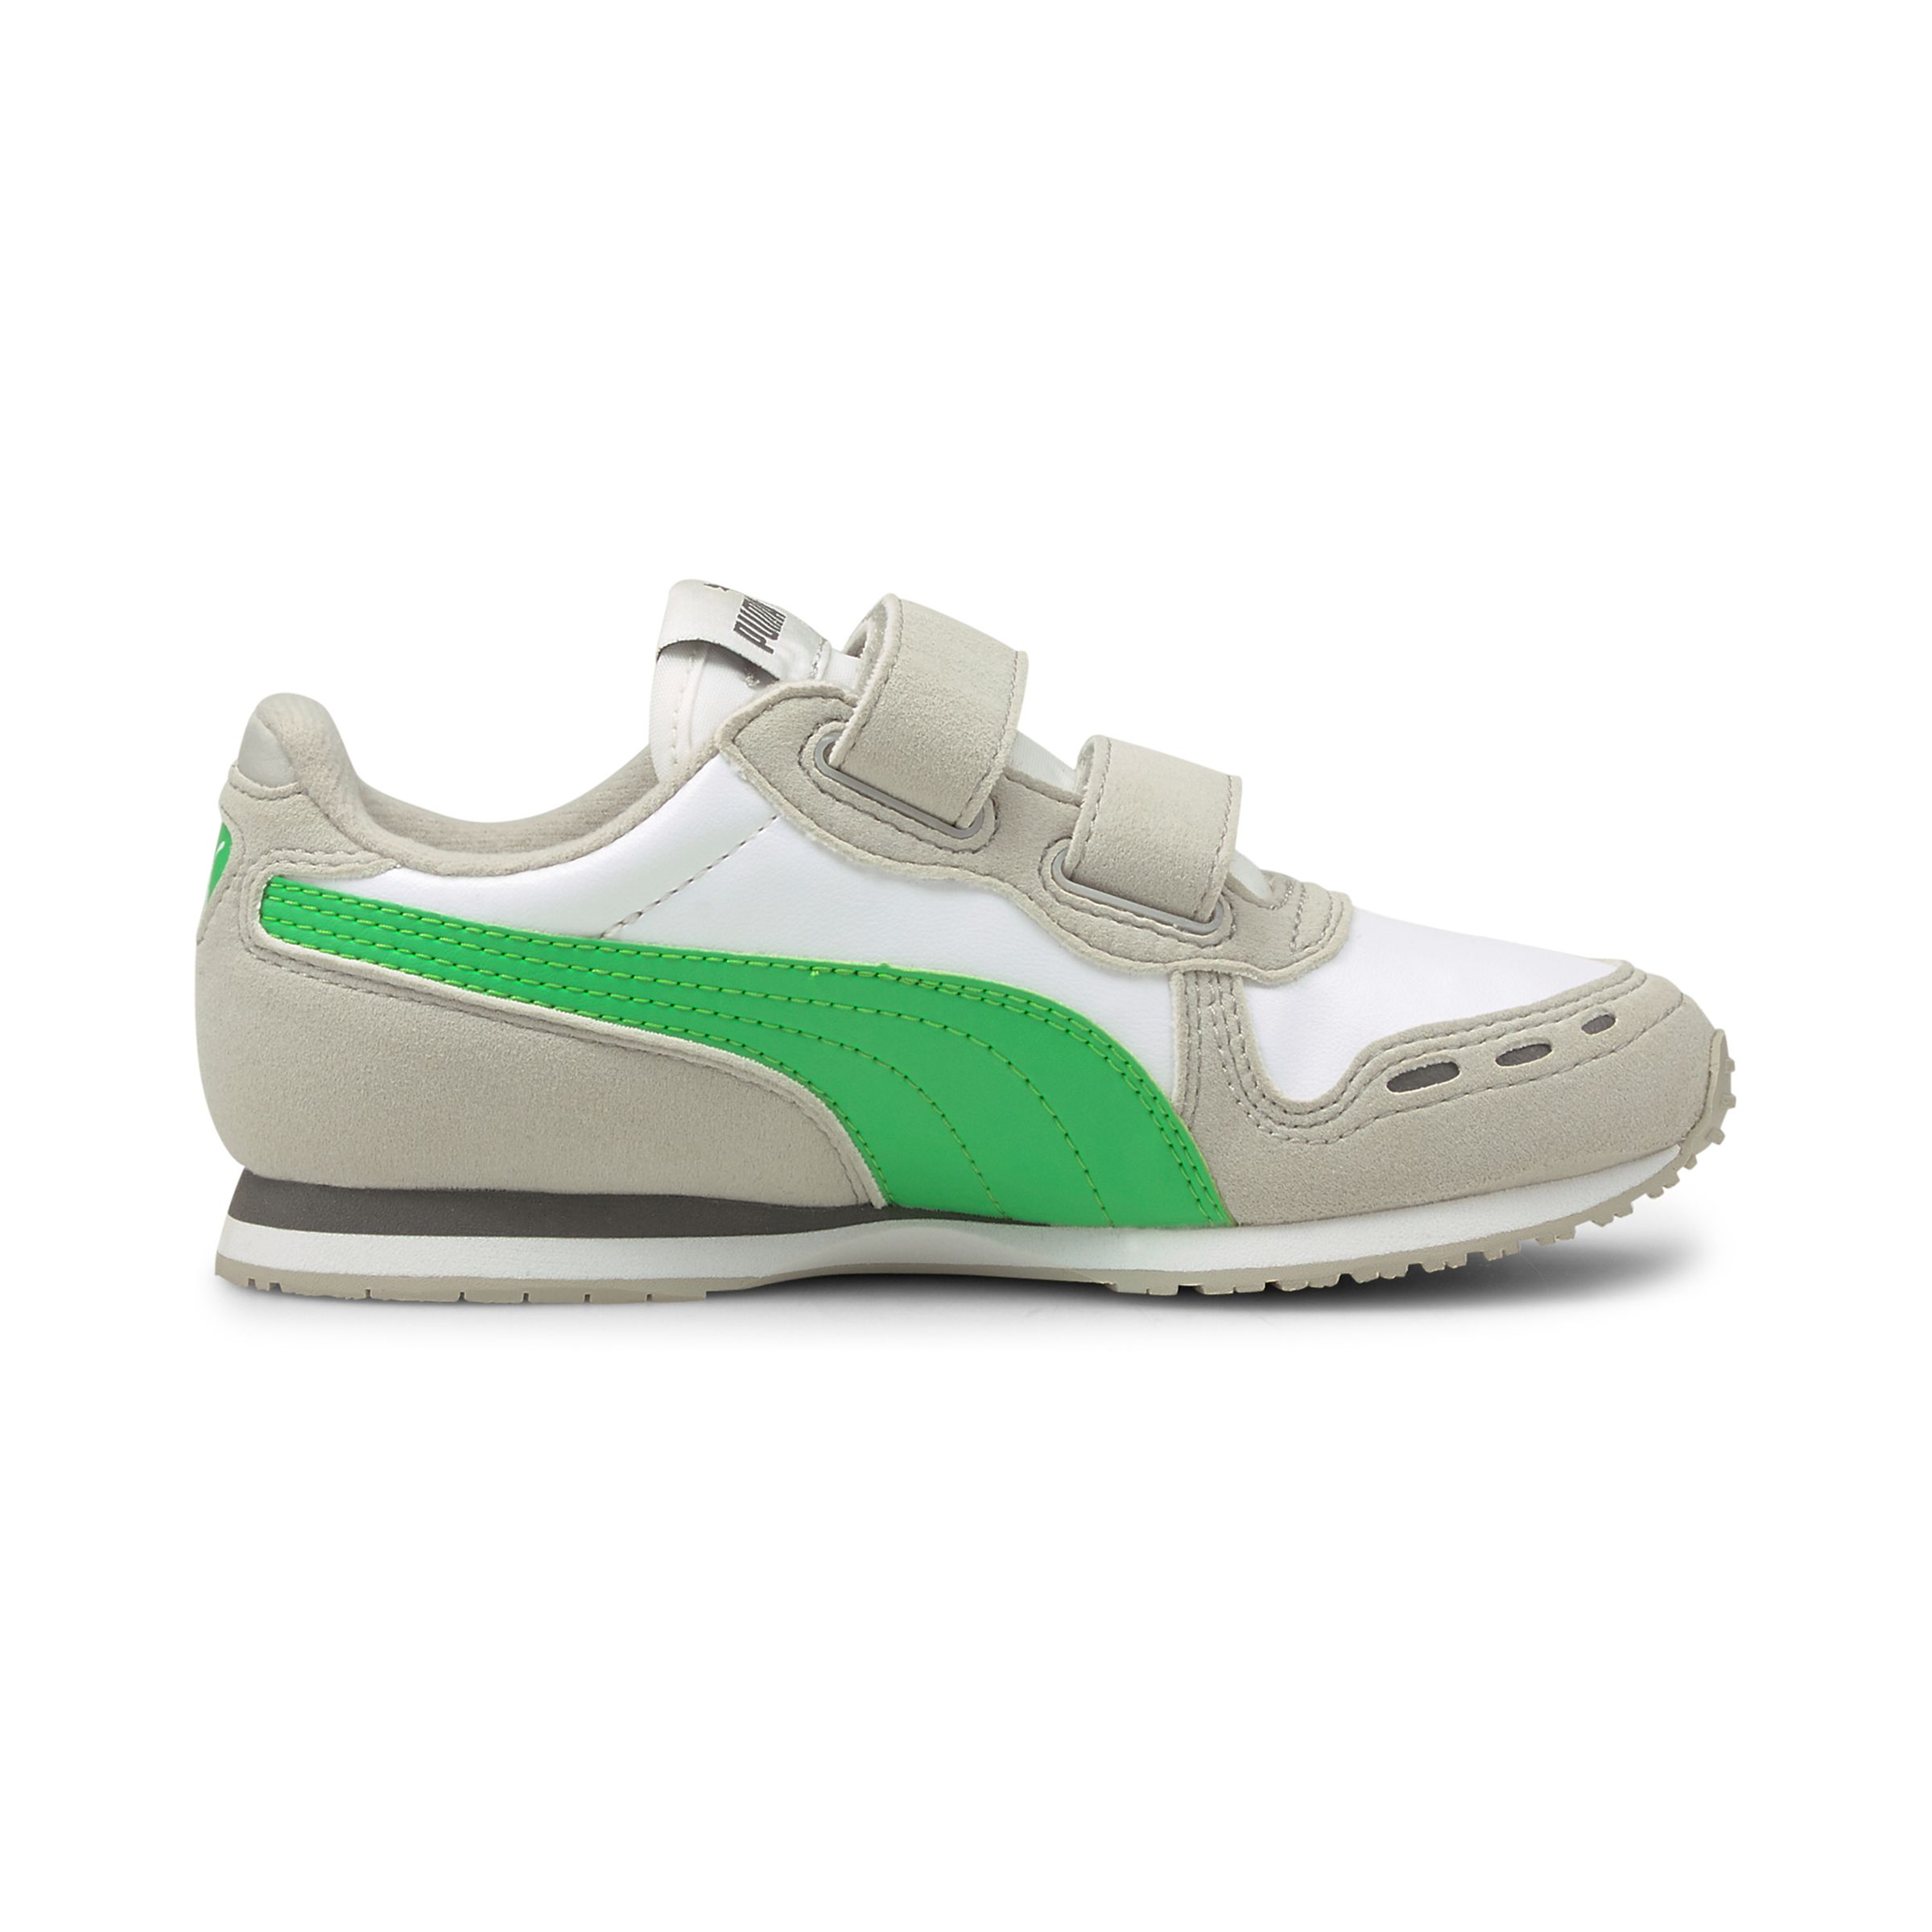 PUMA Cabana Racer SL V PS Kids Sneaker Schuhe weiss/grün 360732 